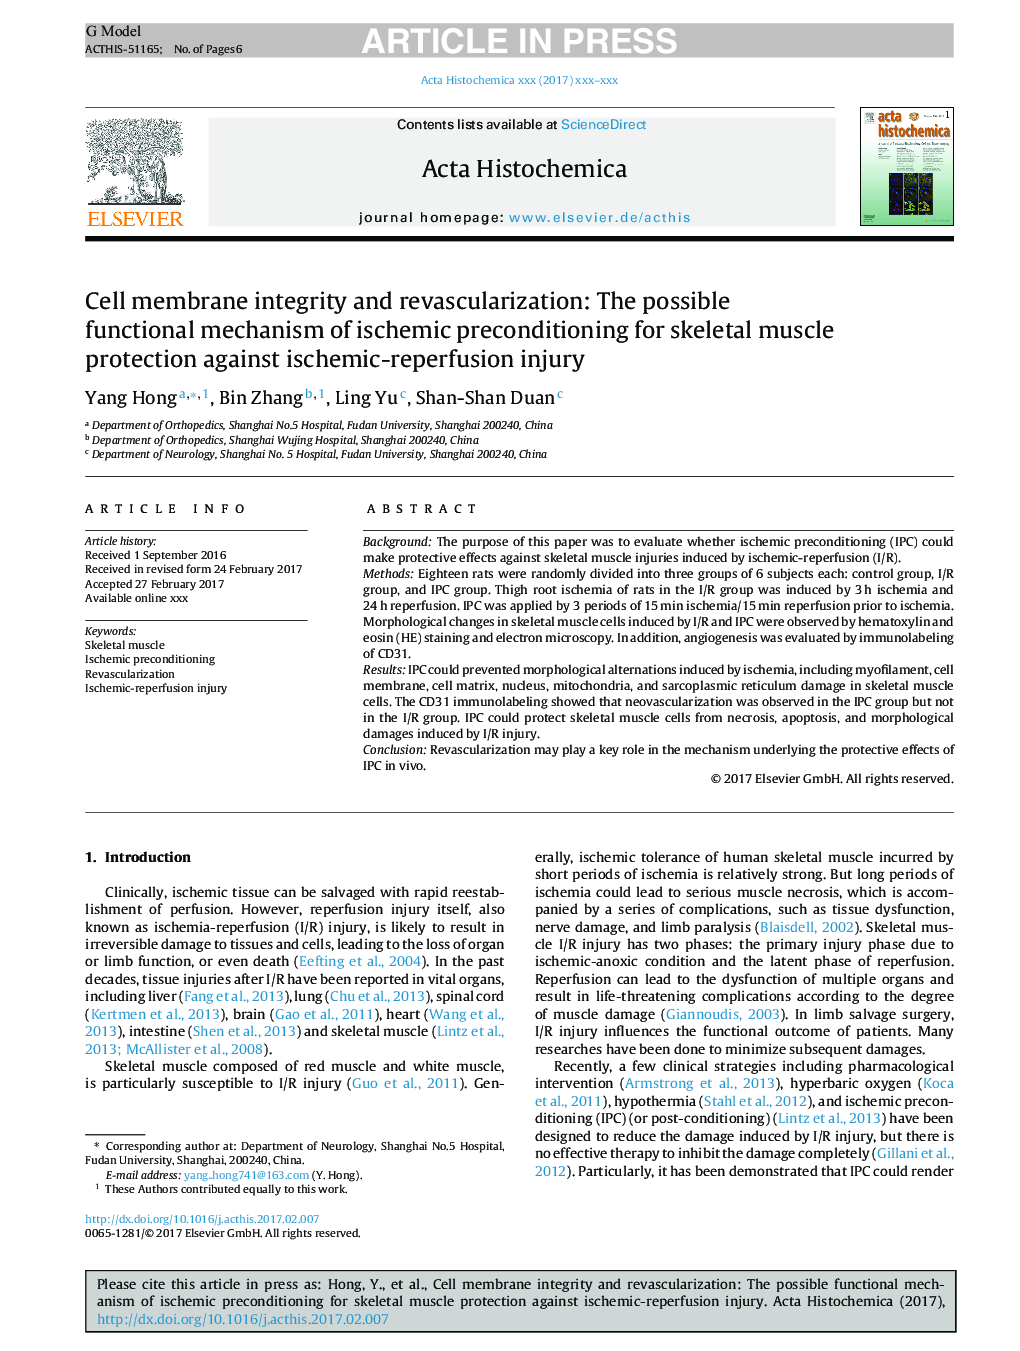 یکپارچگی غشاء سلولی و واکسیناسیون مجدد: مکانیسم کارکرد احتمالی پیش قاعدگی ایسکمیک برای محافظت از عضلات اسکلتی علیه آسیب های ایسکمیک-رپرفیوژن 